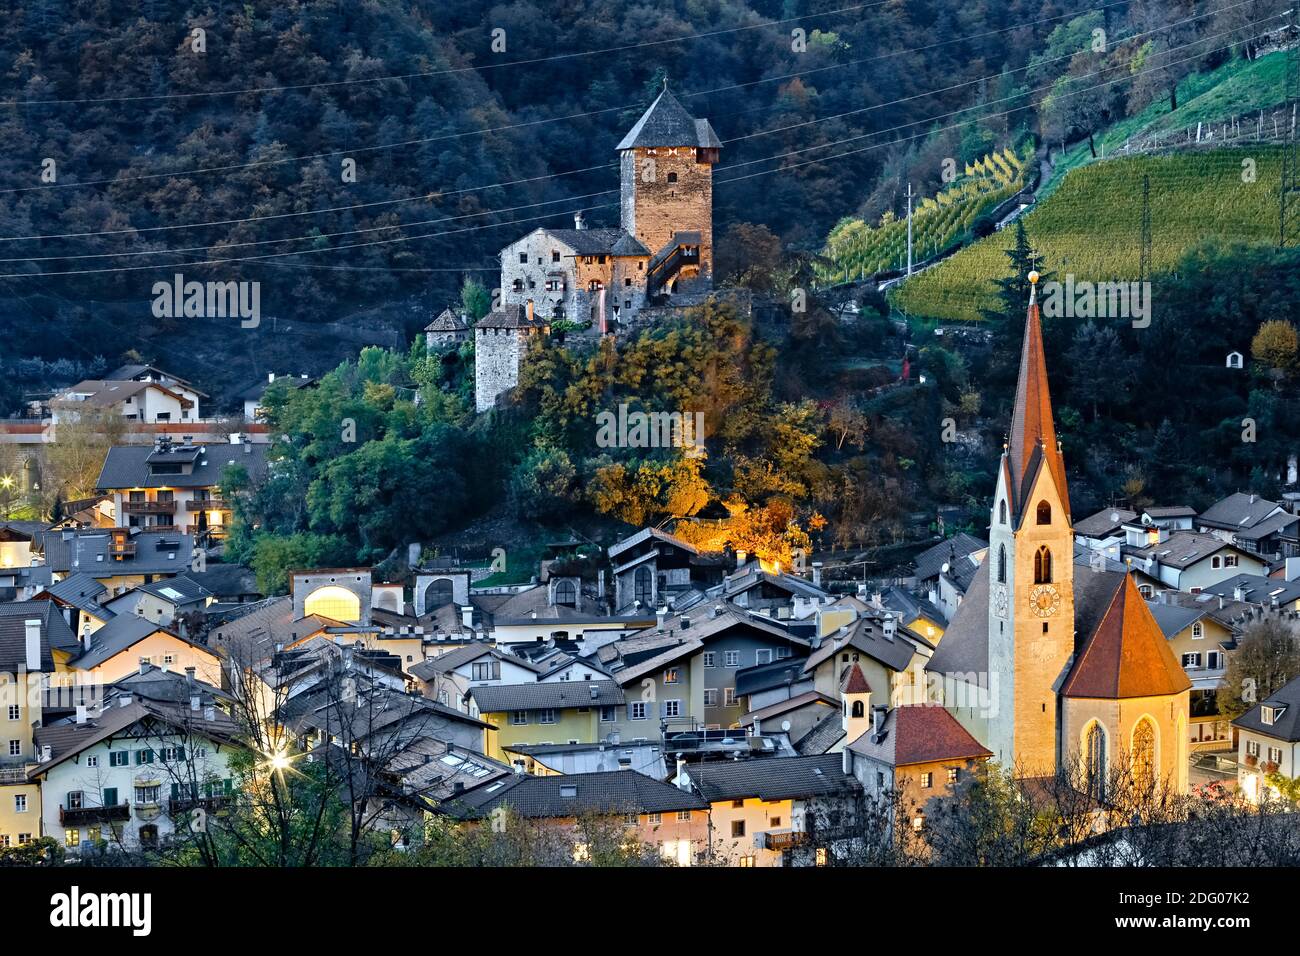 Le village de Chiusa et le château de Branzoll en automne. Vallée d'Isarco, province de Bolzano, Trentin-Haut-Adige, Italie, Europe. Banque D'Images